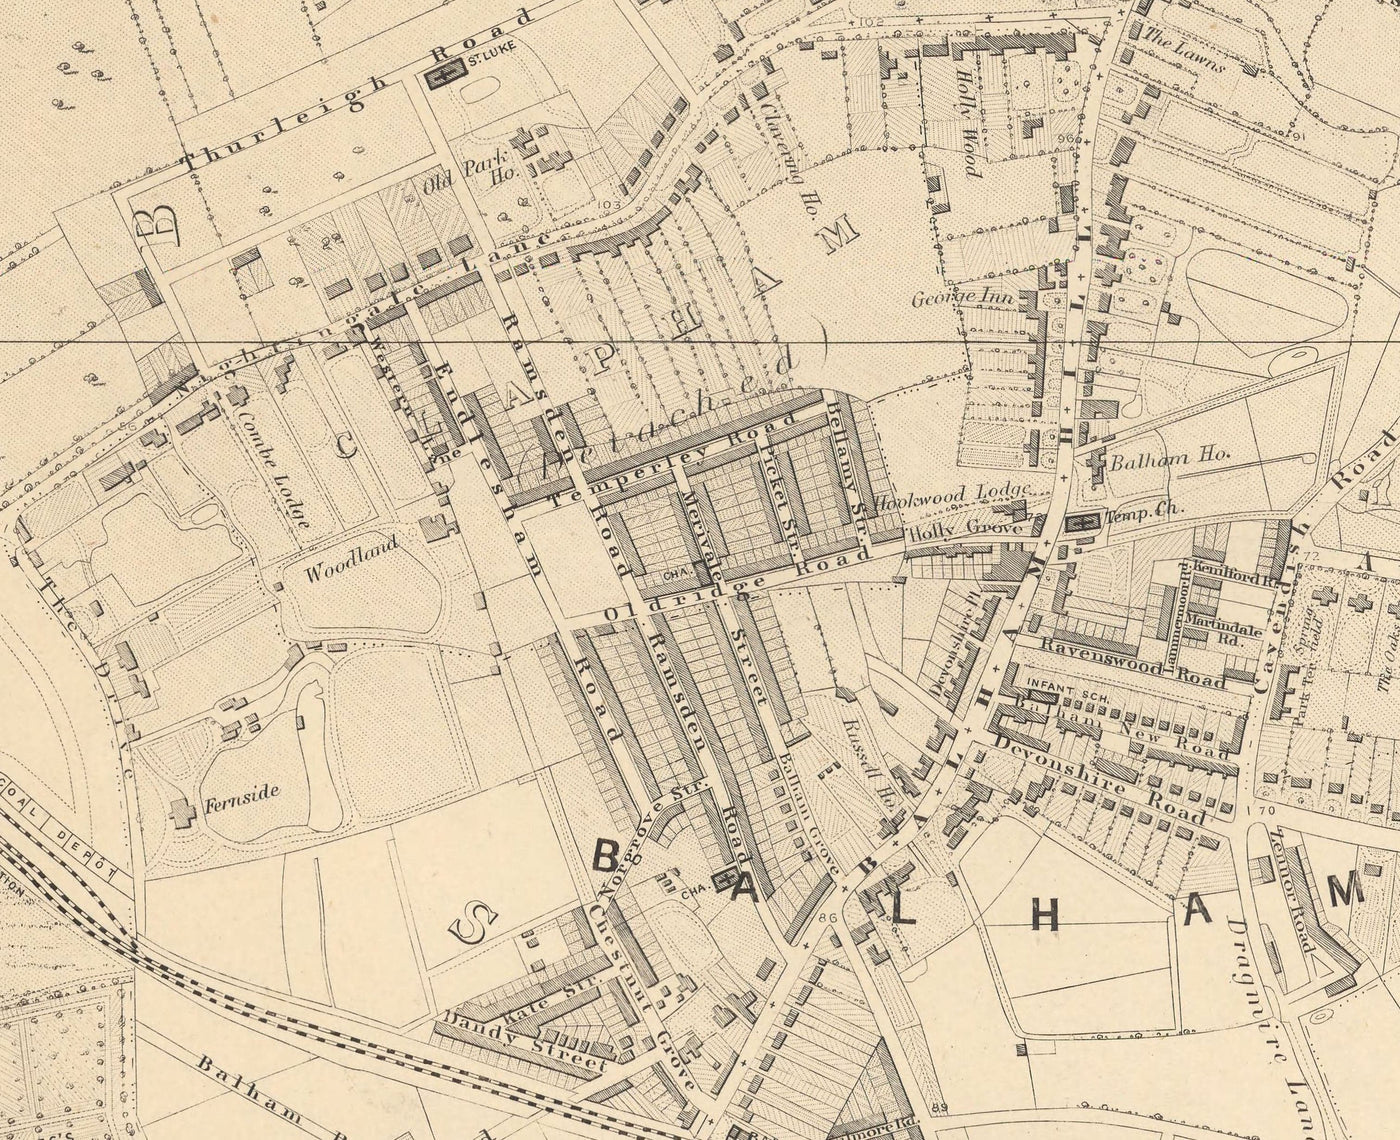 Alte Karte von South London 1862 von Edward Stanford - Clapham, Balham, Brixton, Tooting - SW2, SW4, SW12, SW17, SW11